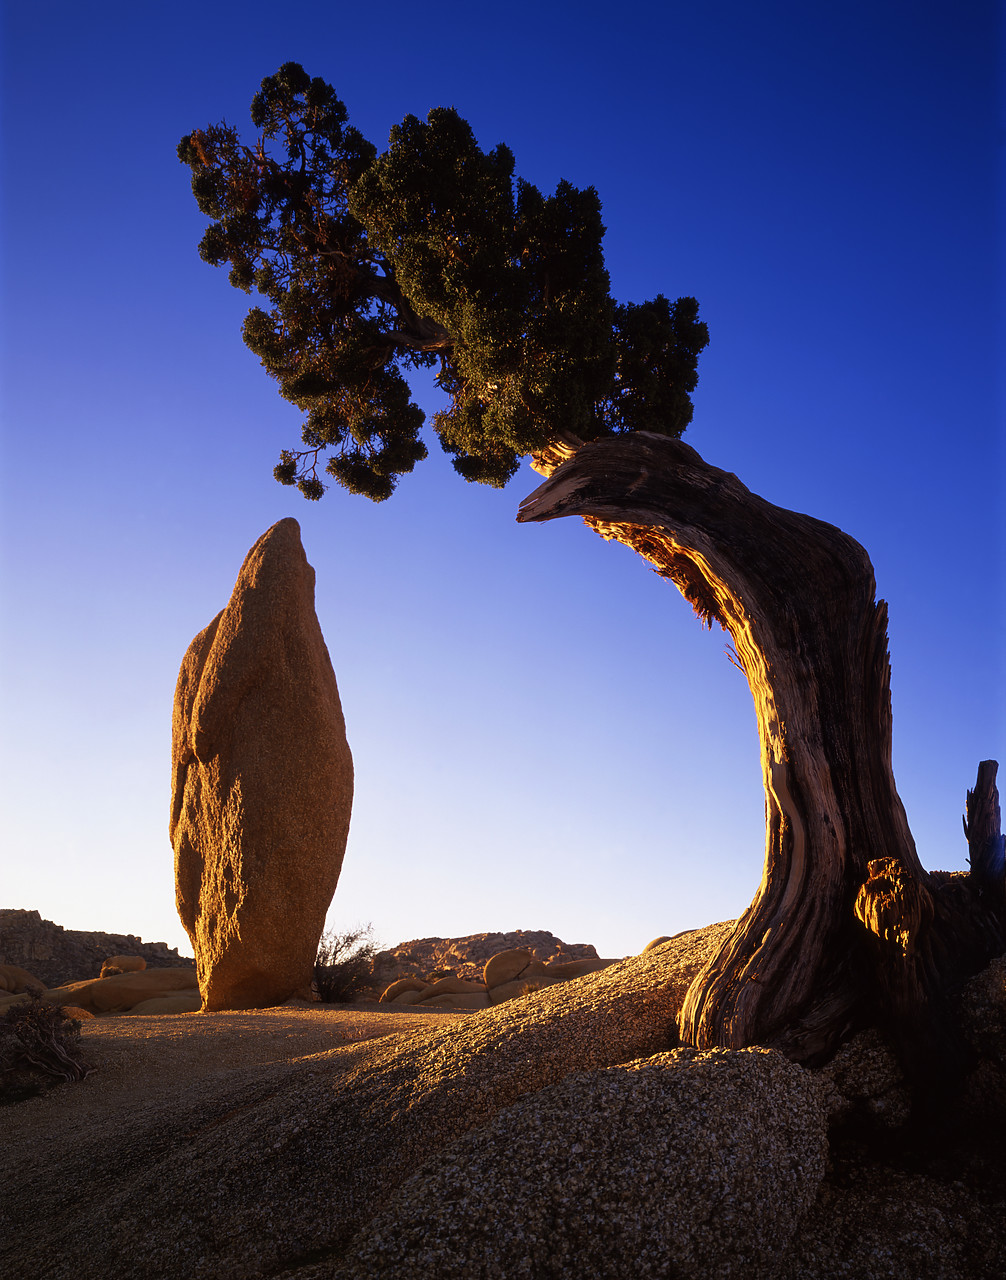 #040015-4 - Juniper Tree framing Boulder, Joshua Tree National Park, California, USA